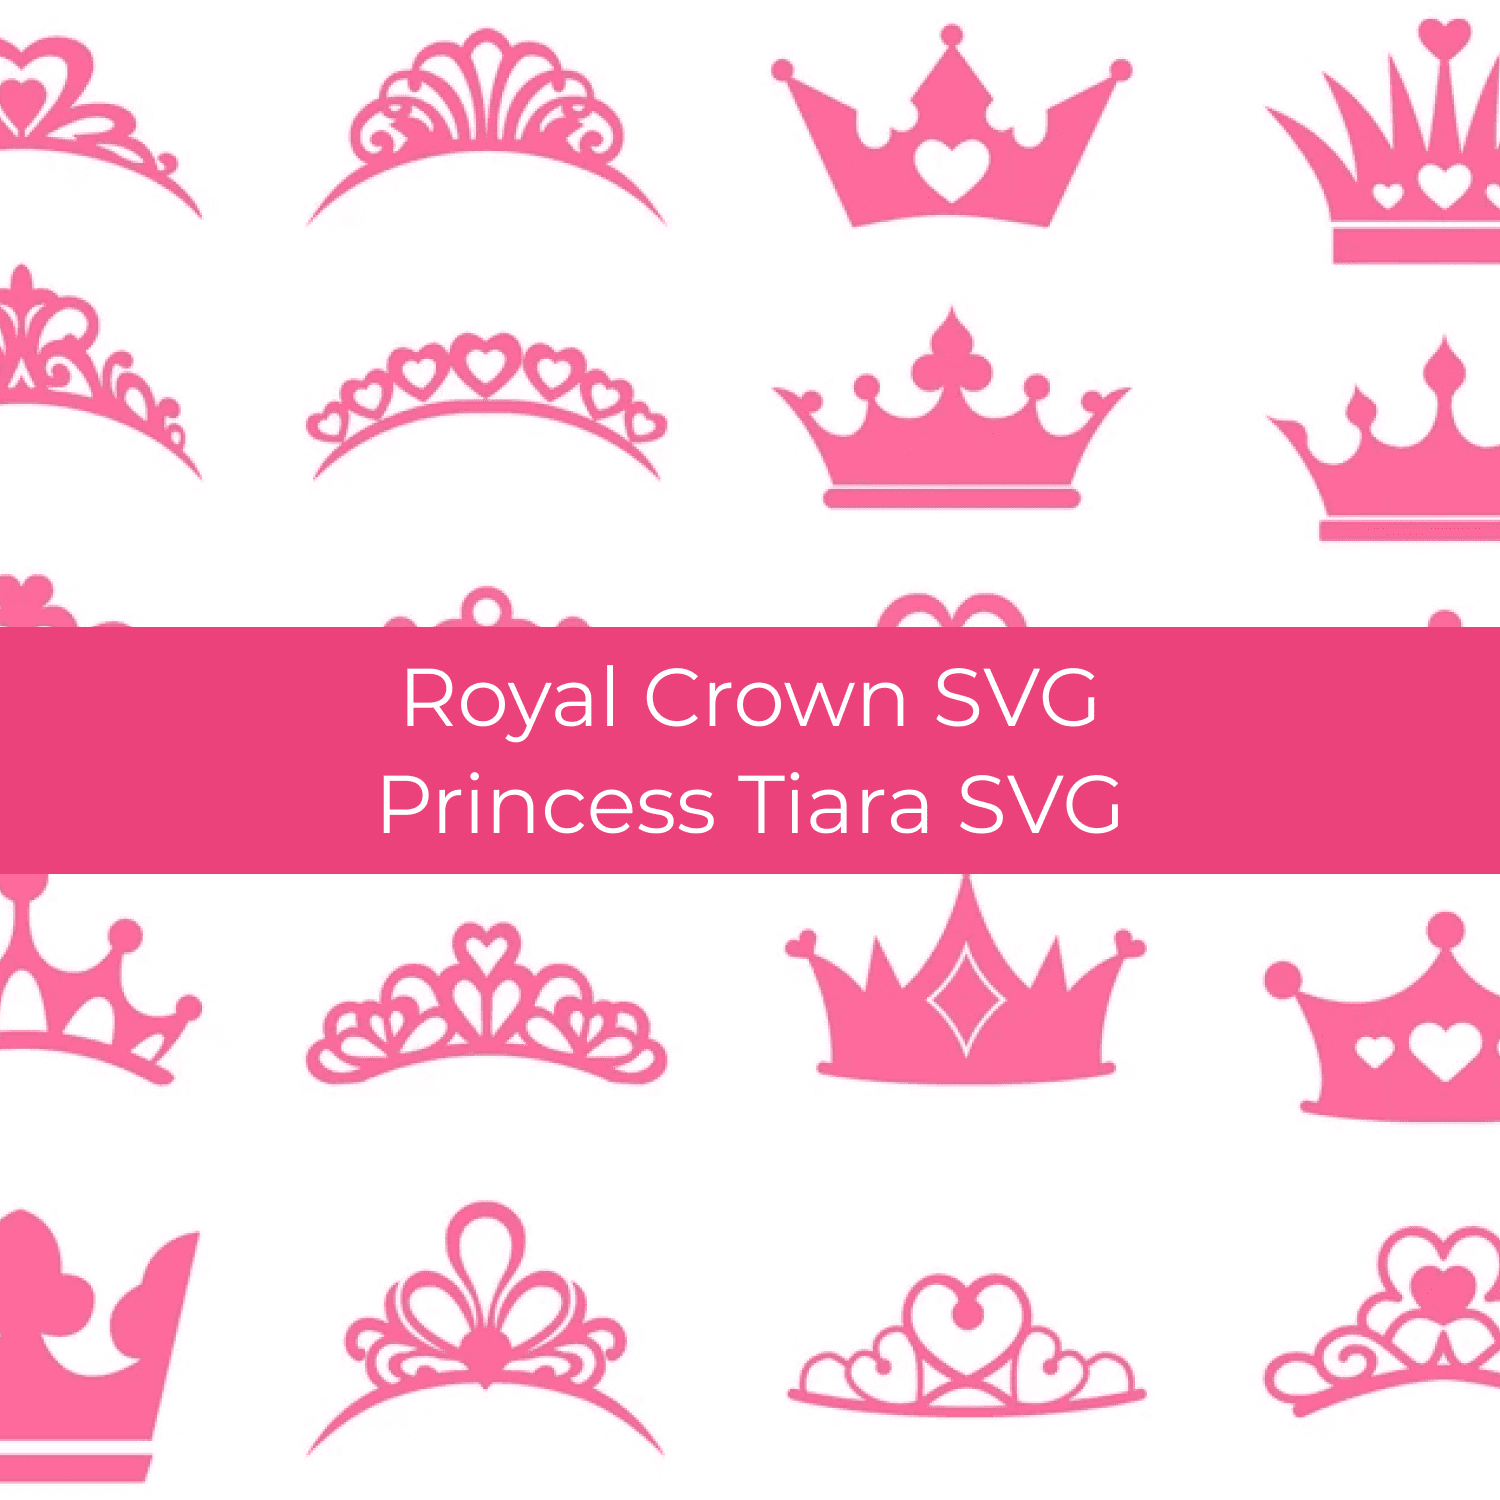 Princess Tiara SVG Files.